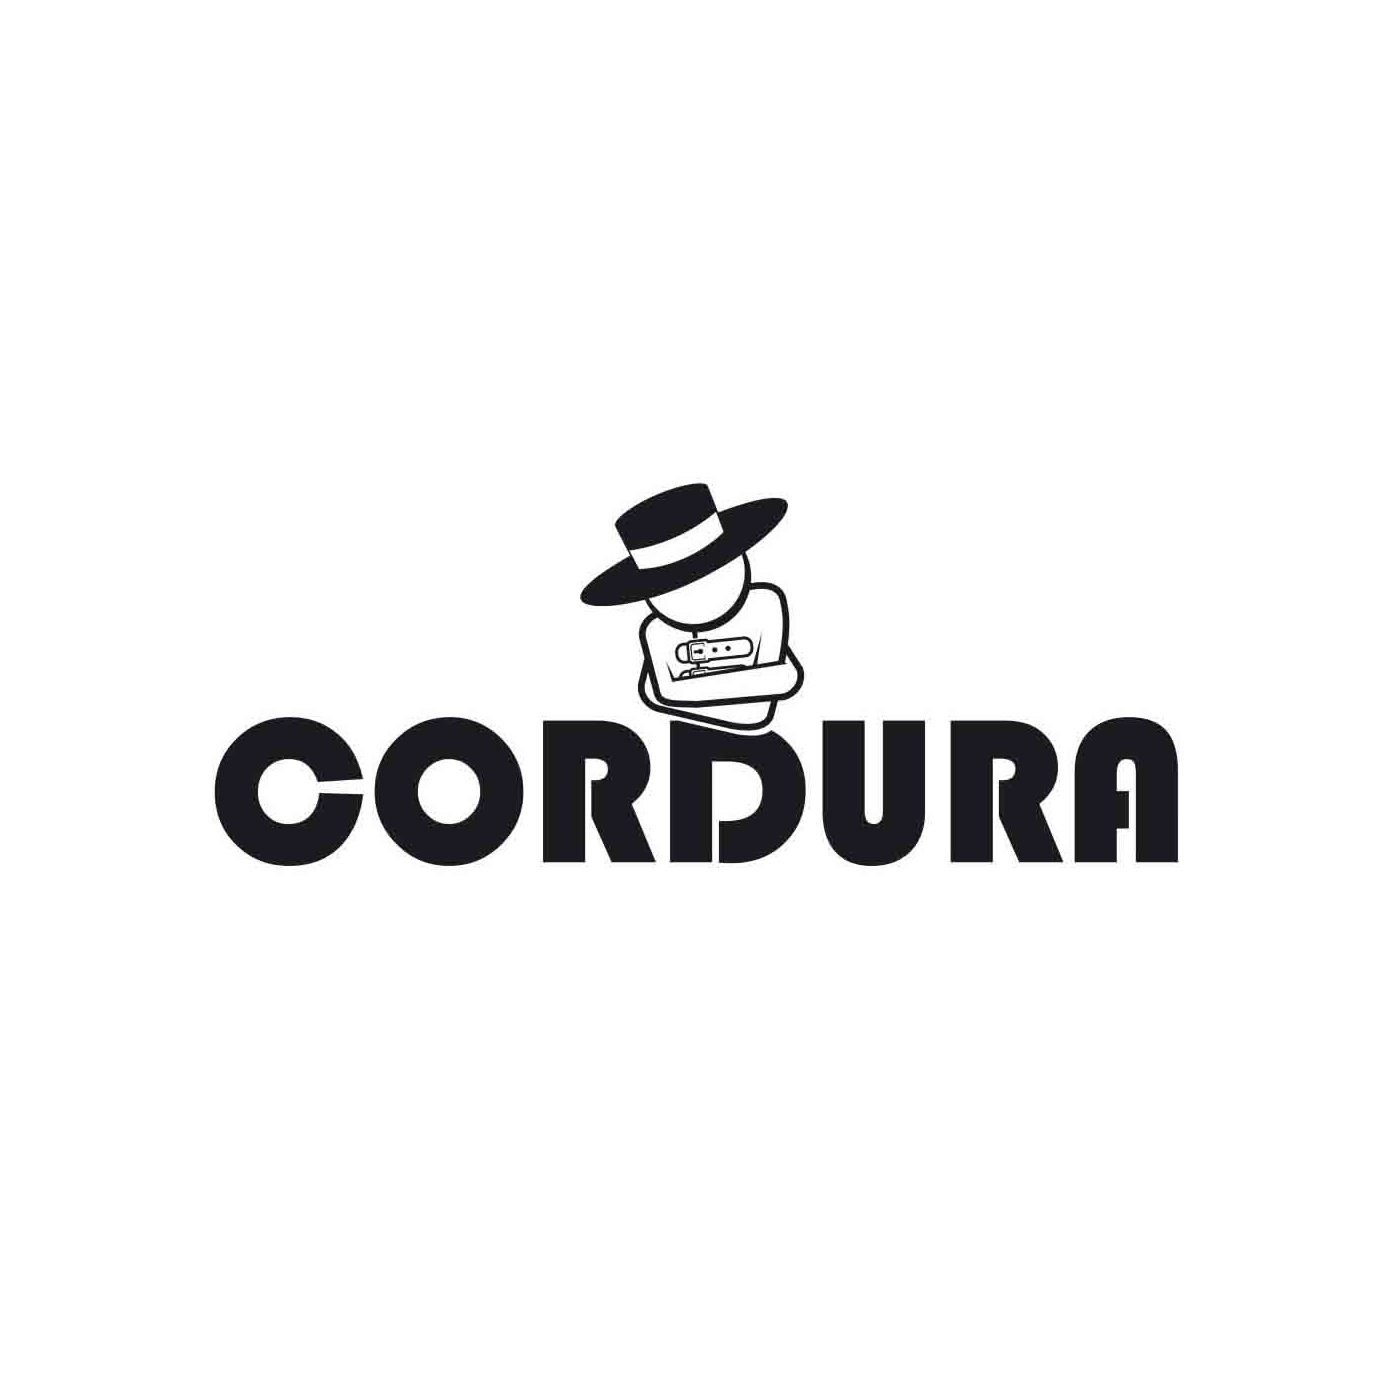 Podcast de Ciudad Cordura